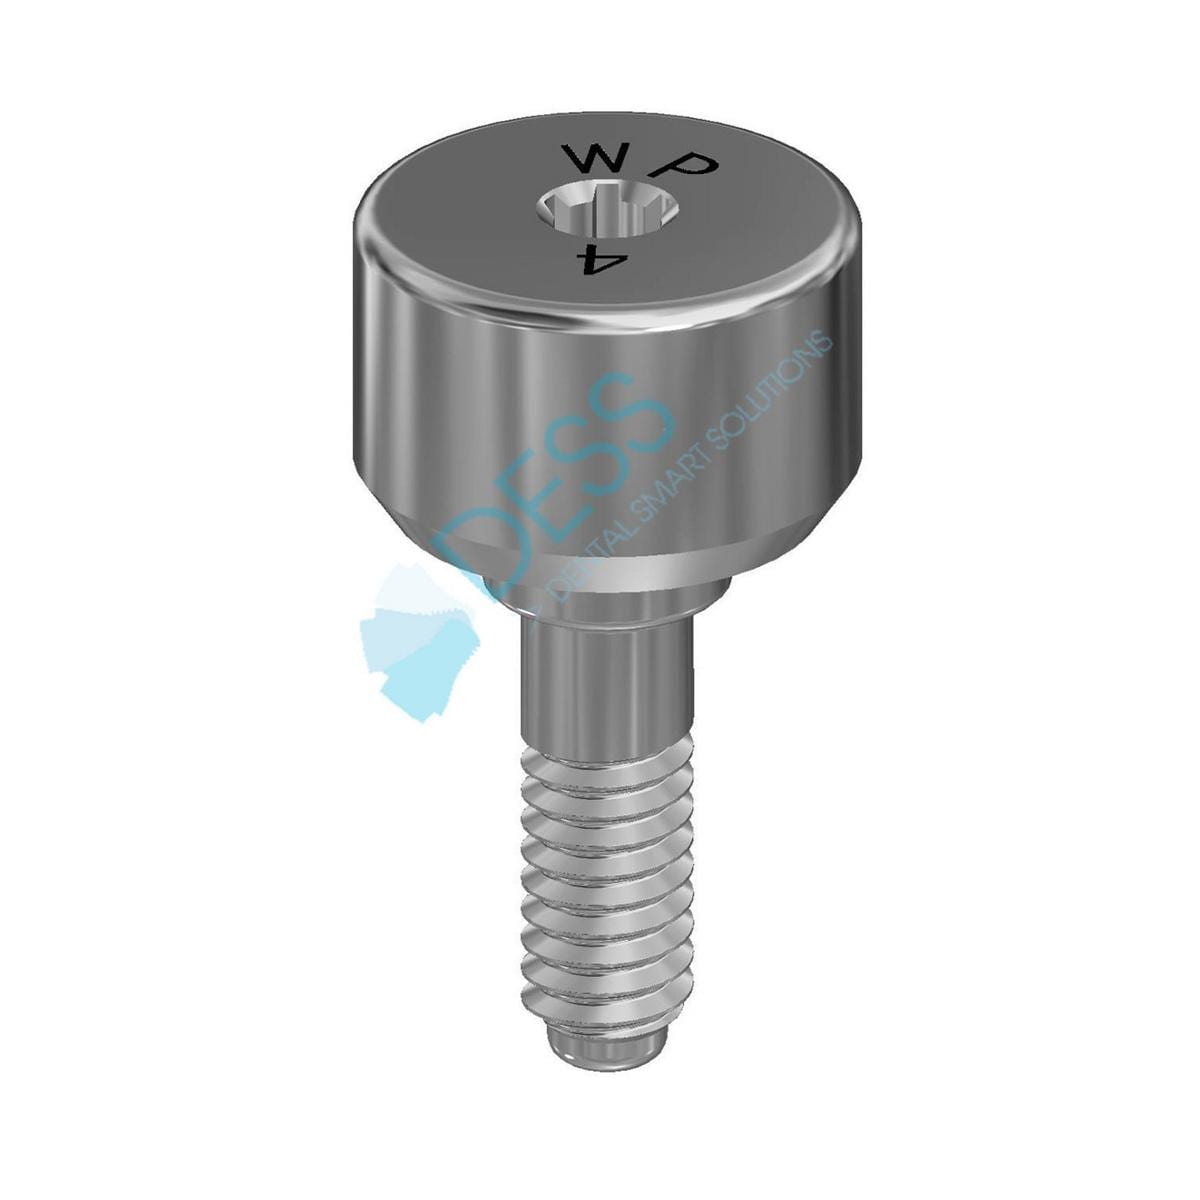 Gingivaformer - kompatibel mit Nobel Replace Select™ - WP Ø 5,1 mm, Höhe 4,0 mm